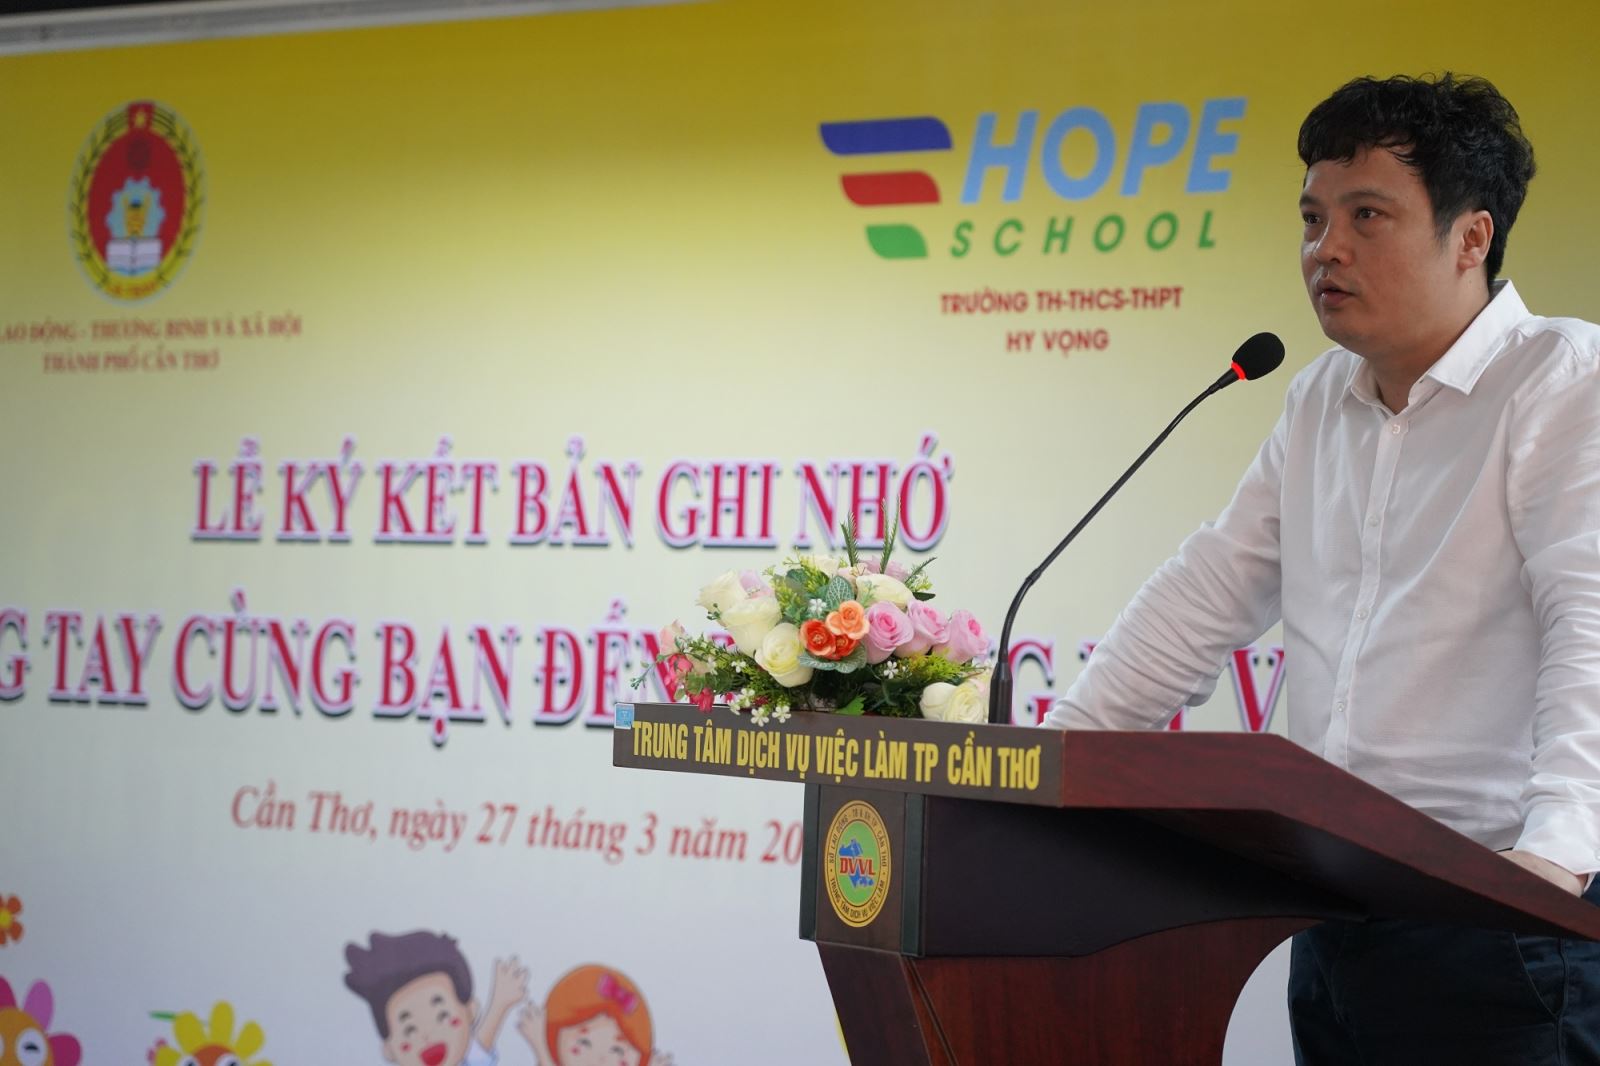 Ông Nguyễn Văn Khoa phát biểu tại Lễ ký kết Biên bản ghi nhớ “Chung tay cùng bạn đến Trường Hy Vọng”.